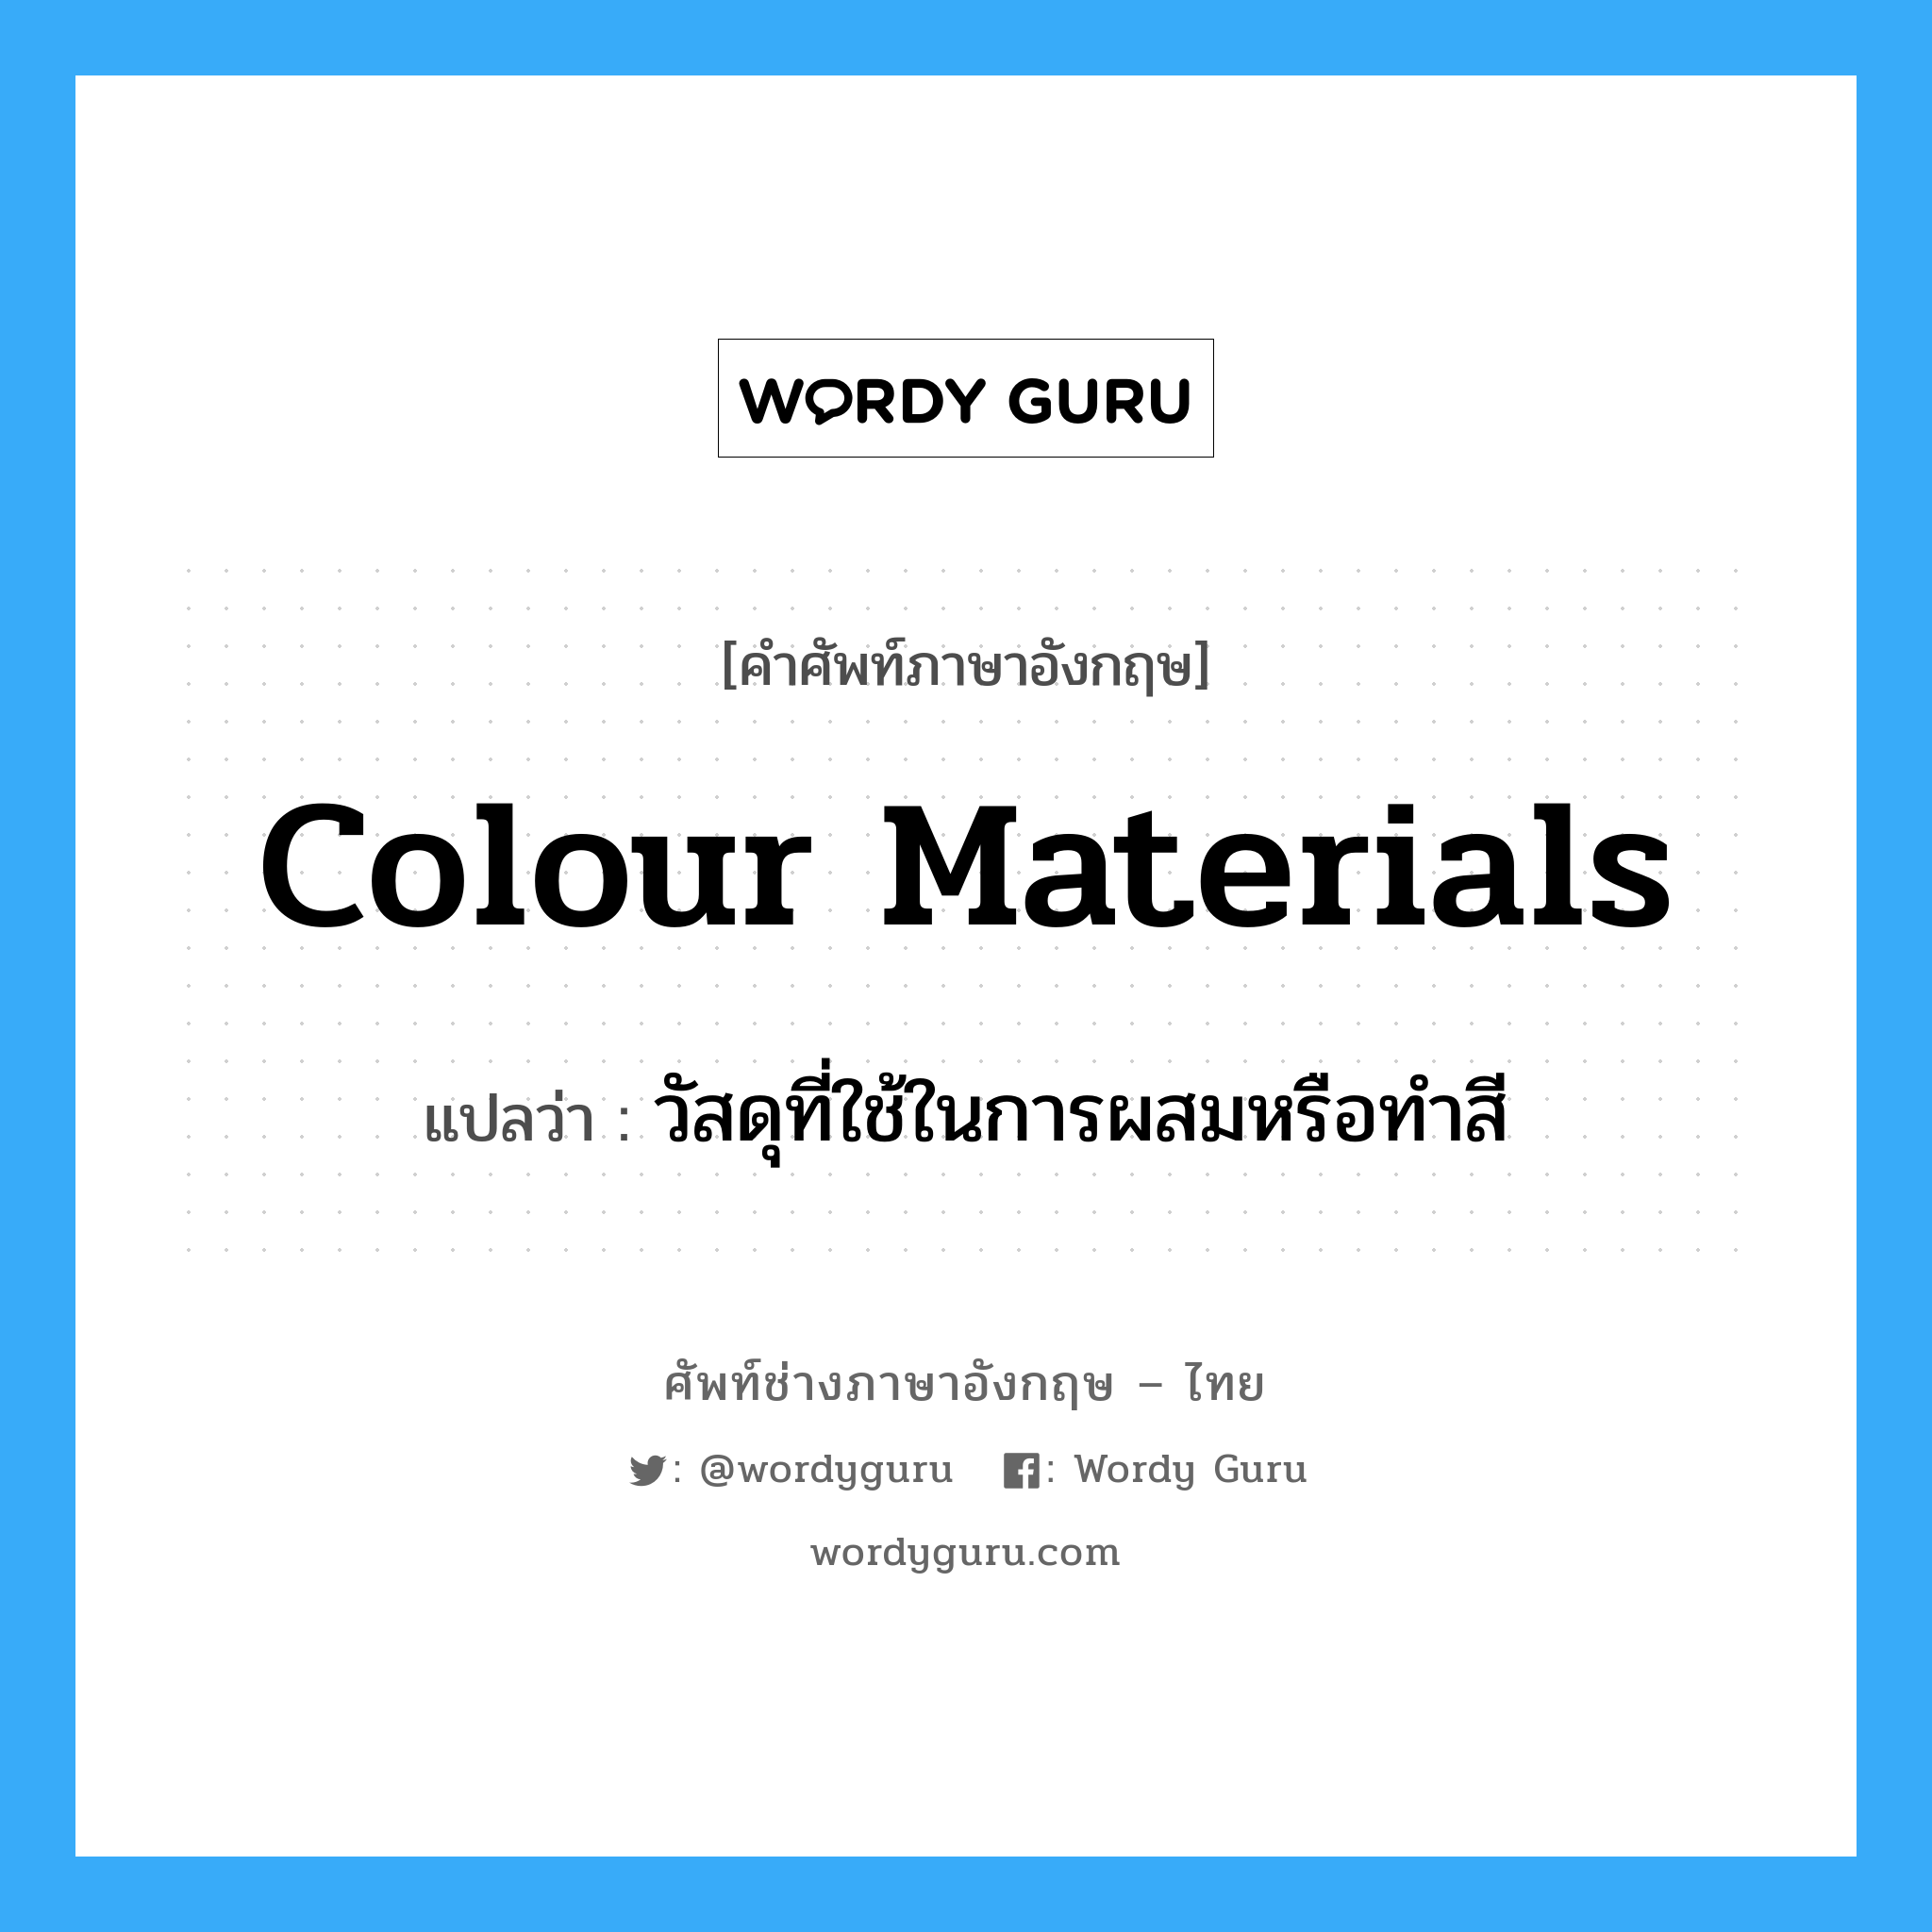 วัสดุที่ใช้ในการผสมหรือทำสี ภาษาอังกฤษ?, คำศัพท์ช่างภาษาอังกฤษ - ไทย วัสดุที่ใช้ในการผสมหรือทำสี คำศัพท์ภาษาอังกฤษ วัสดุที่ใช้ในการผสมหรือทำสี แปลว่า colour materials